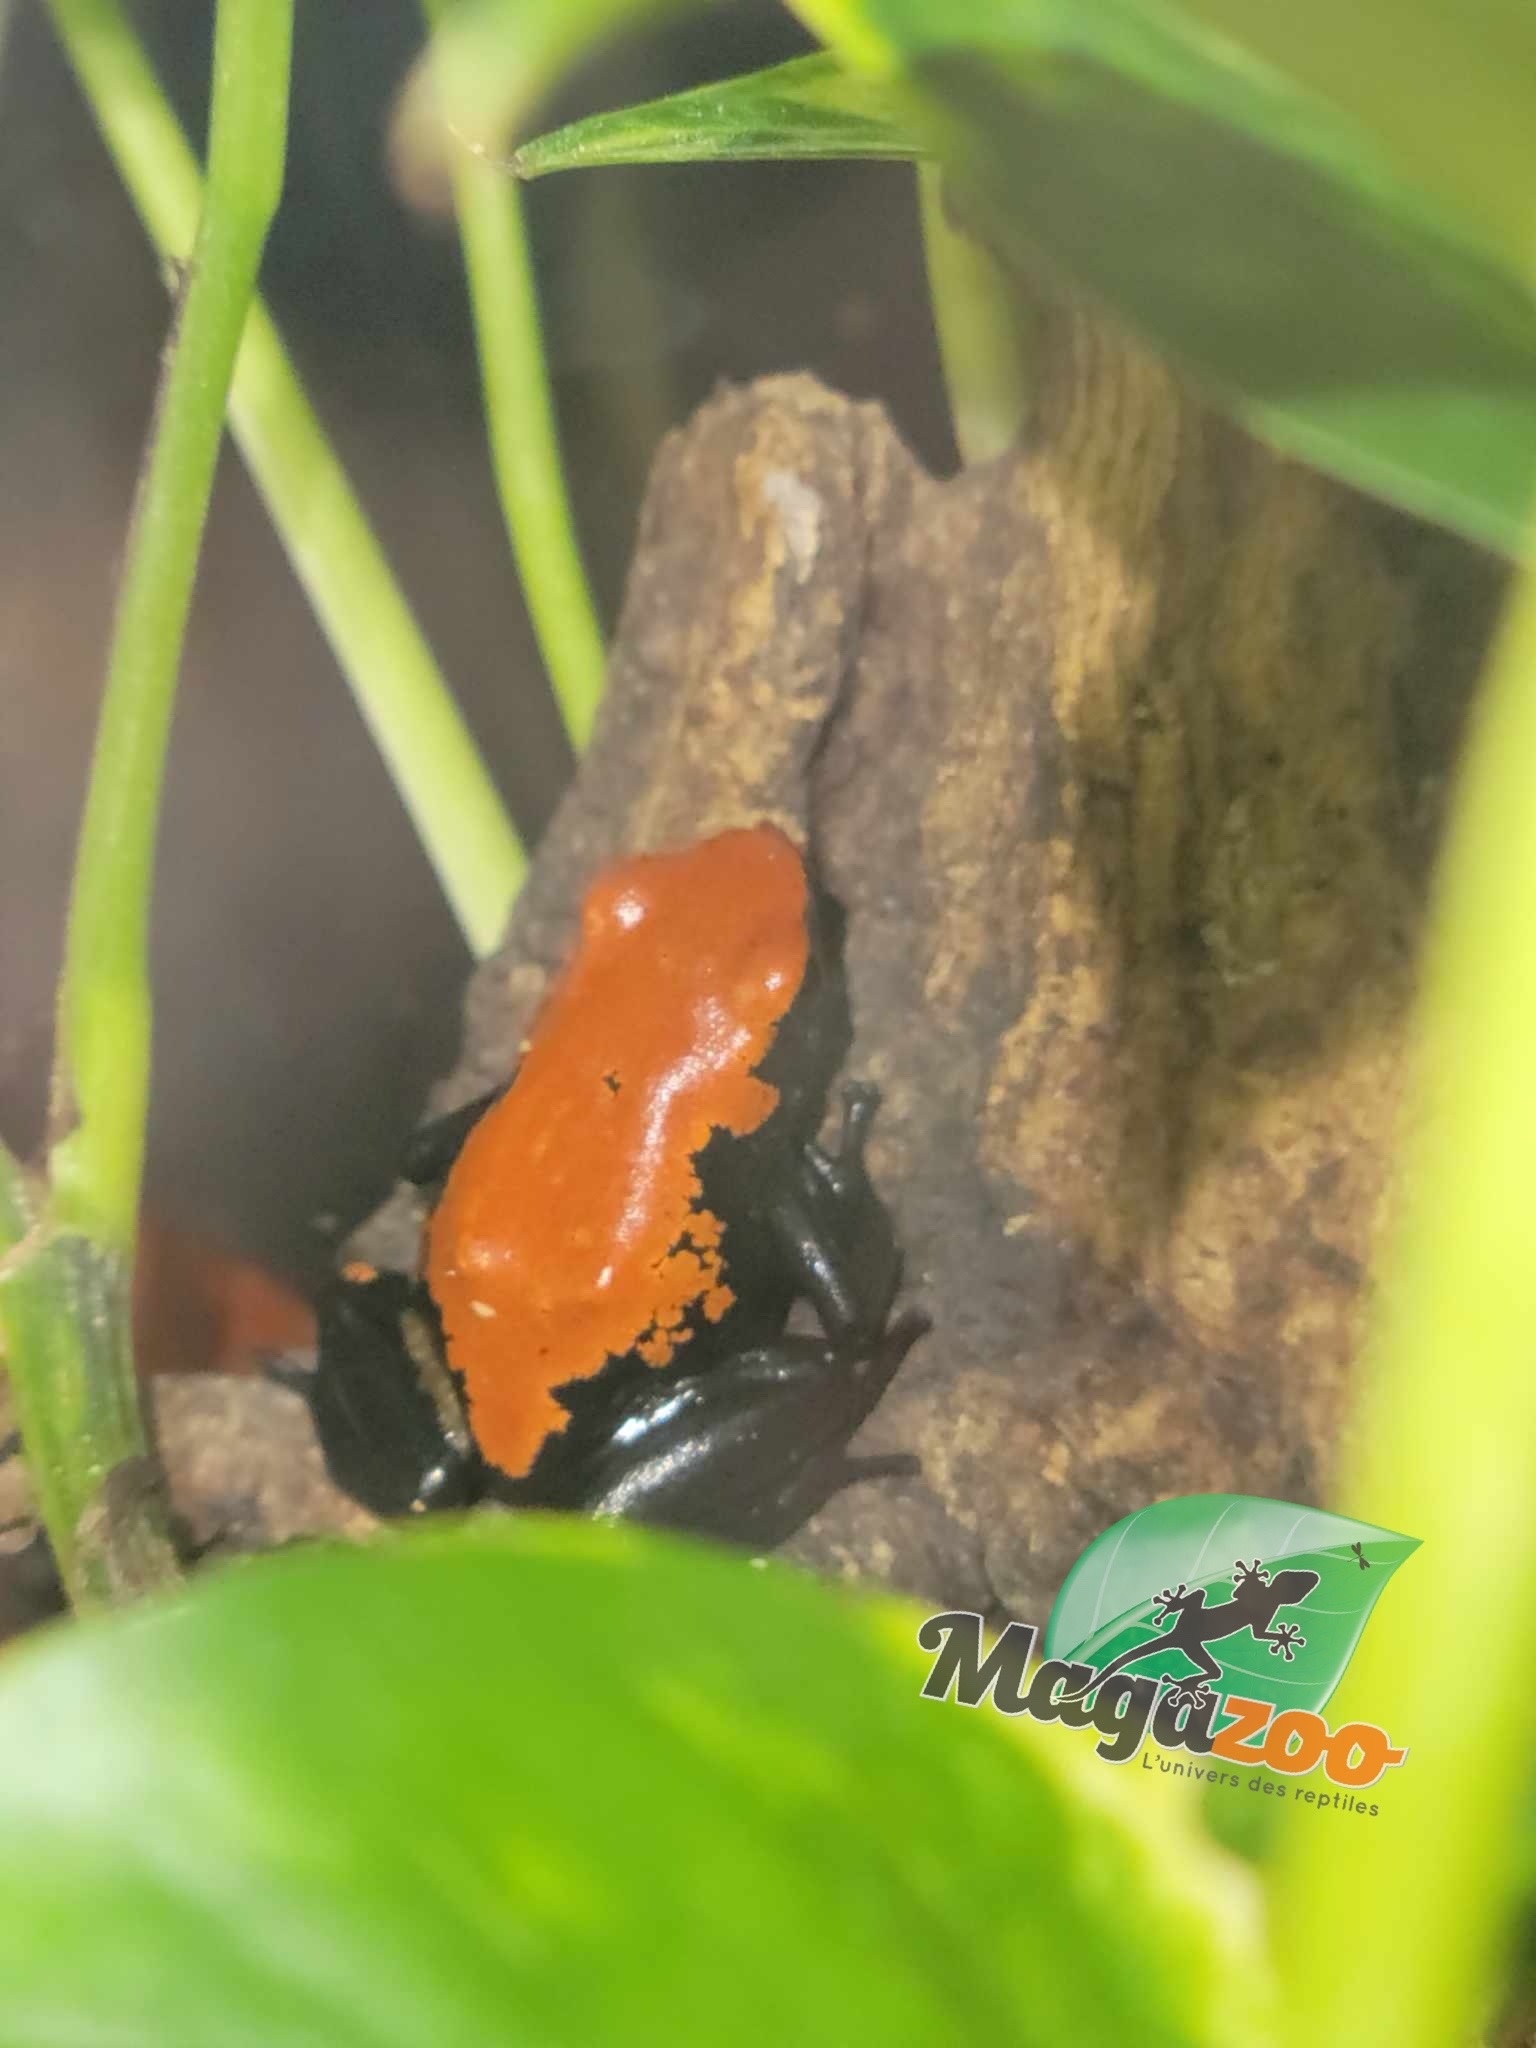 Magazoo Splash-backed poison frog / Adelphobates galactonotus